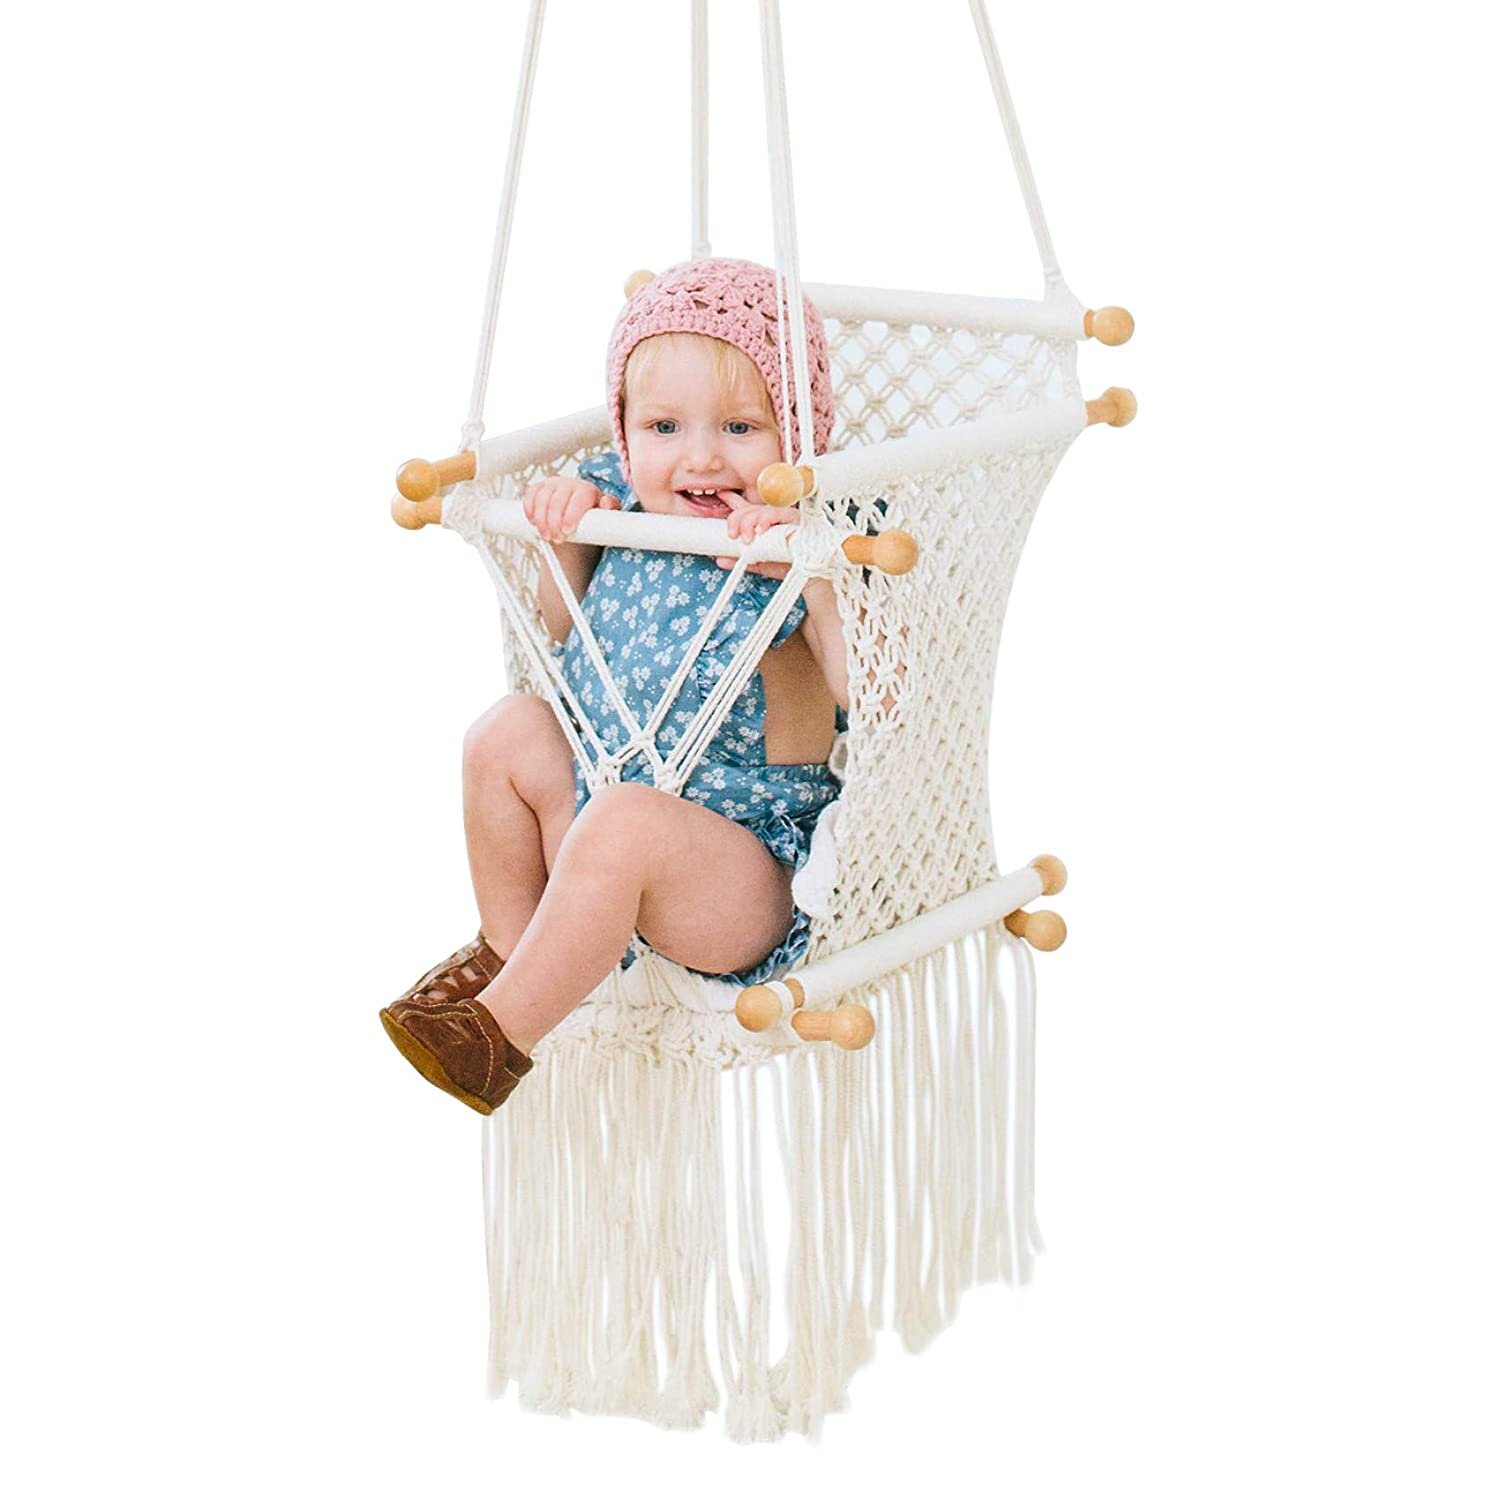 macrame baby swing crochet